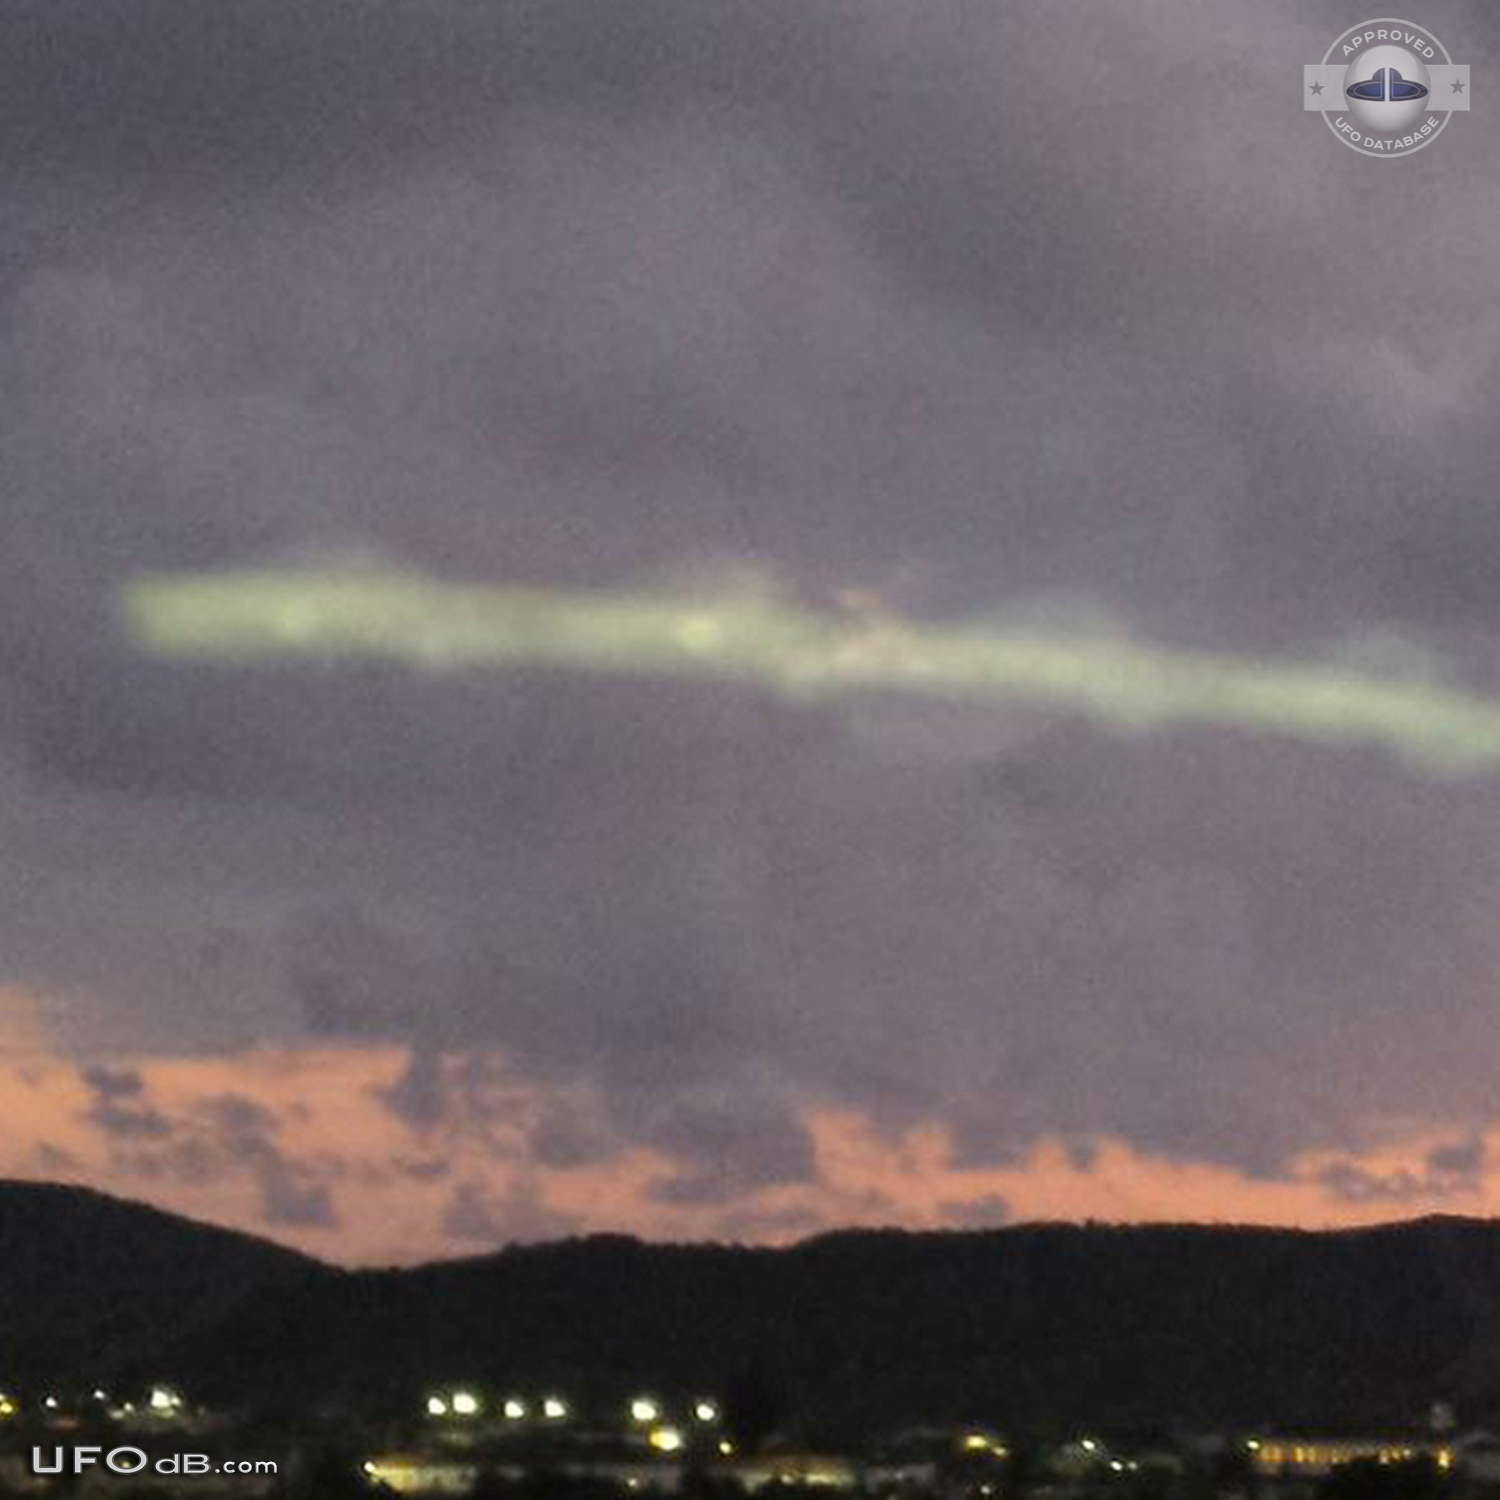 Strange UFO in the sky near Guantanamo prison, Cuba in 2015 UFO Picture #618-3